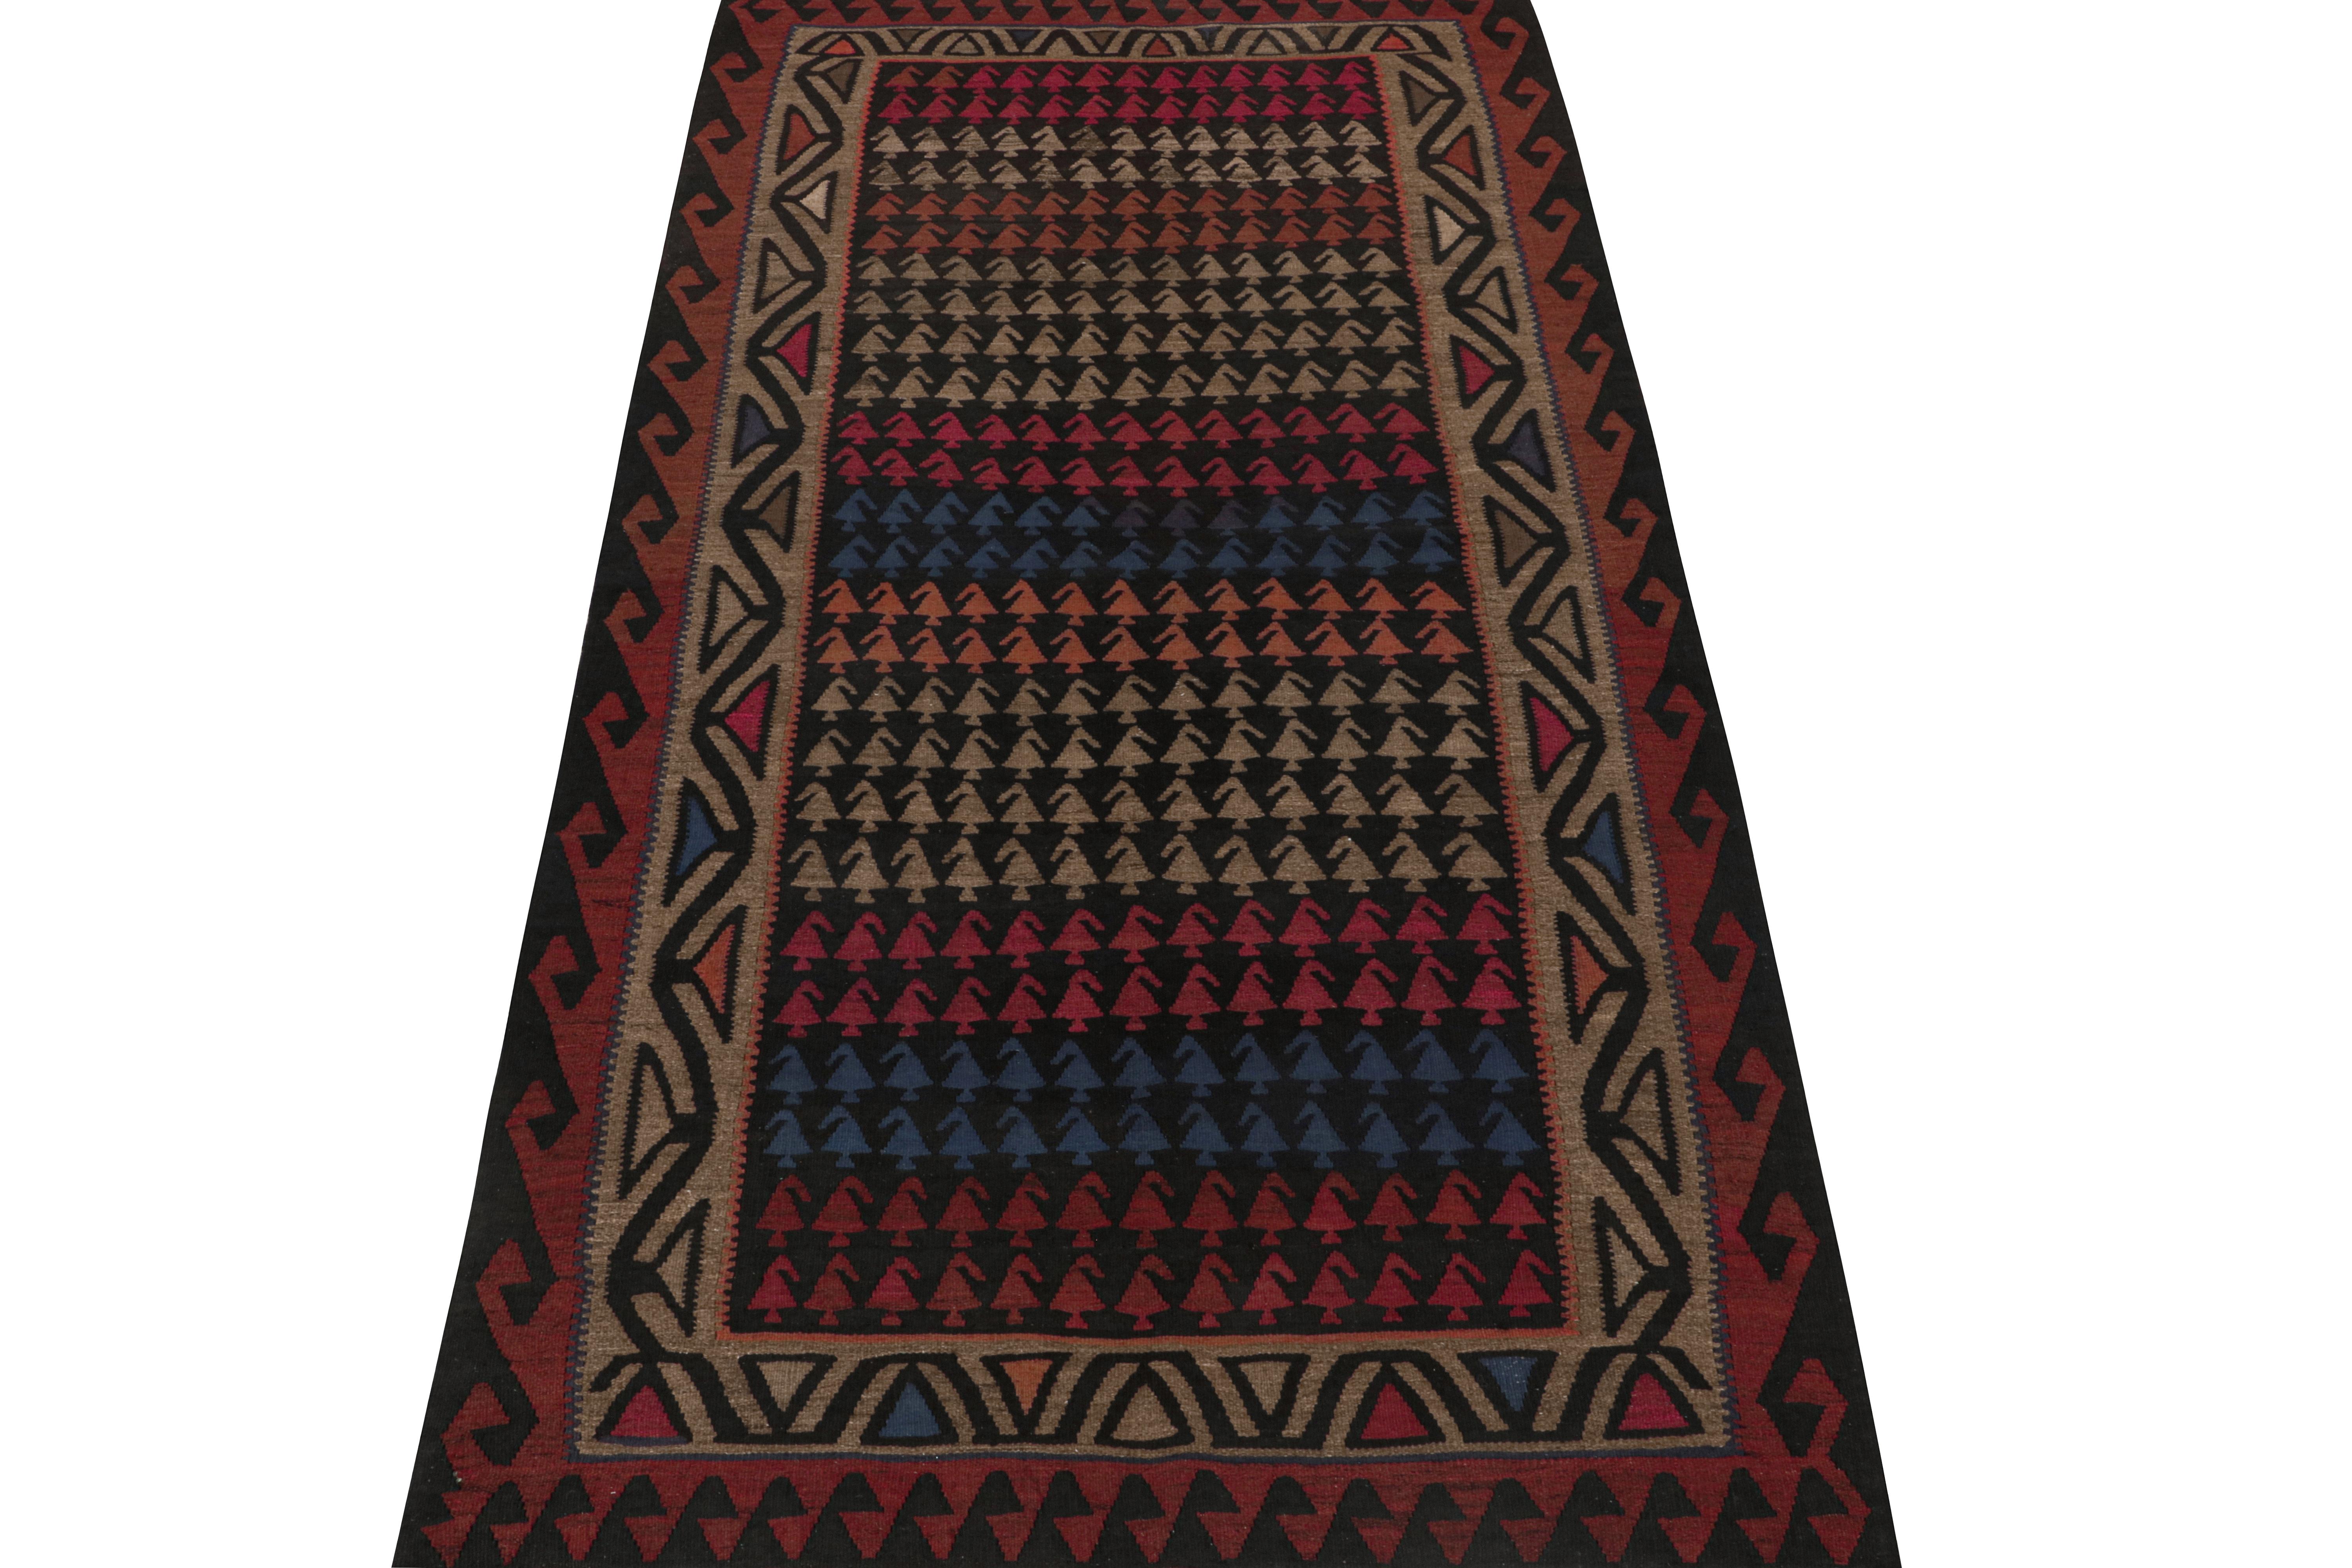 Ce Rug & Kilim persan vintage de 5x11 est un tapis tribal provenant de Meshkin, un petit village du nord-ouest connu pour ses fabuleuses œuvres. Tissé à la main en laine, il date des années 1950-1960. 

Sur le Design :

Son design privilégie une